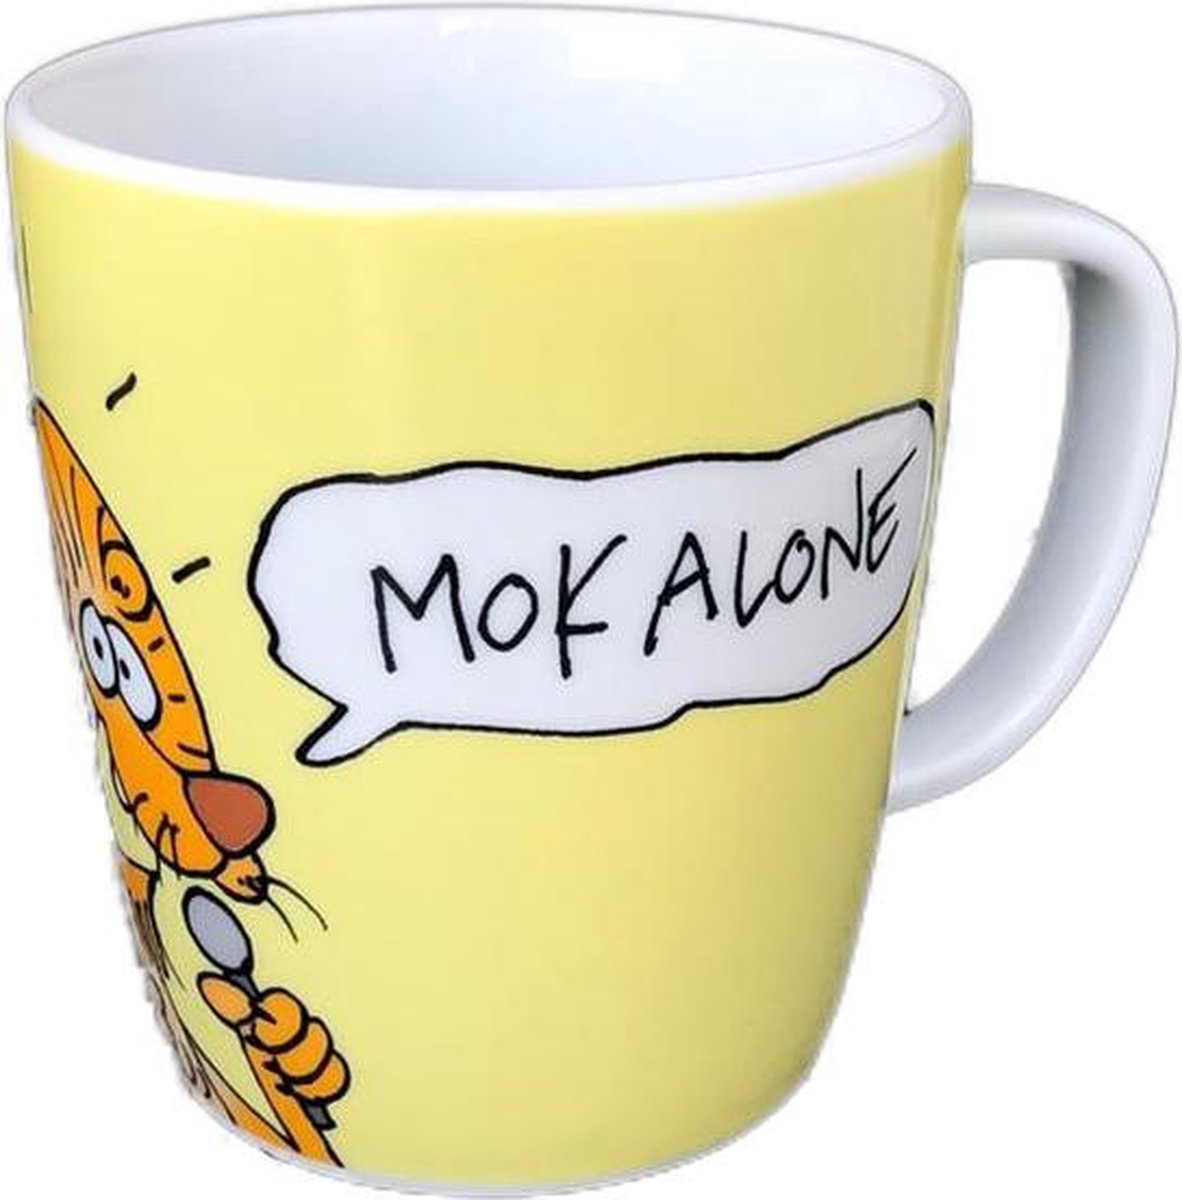 Toon van Driel grote mok voor koffie of thee | You never mok alone | kantoorhumor | 325 ml